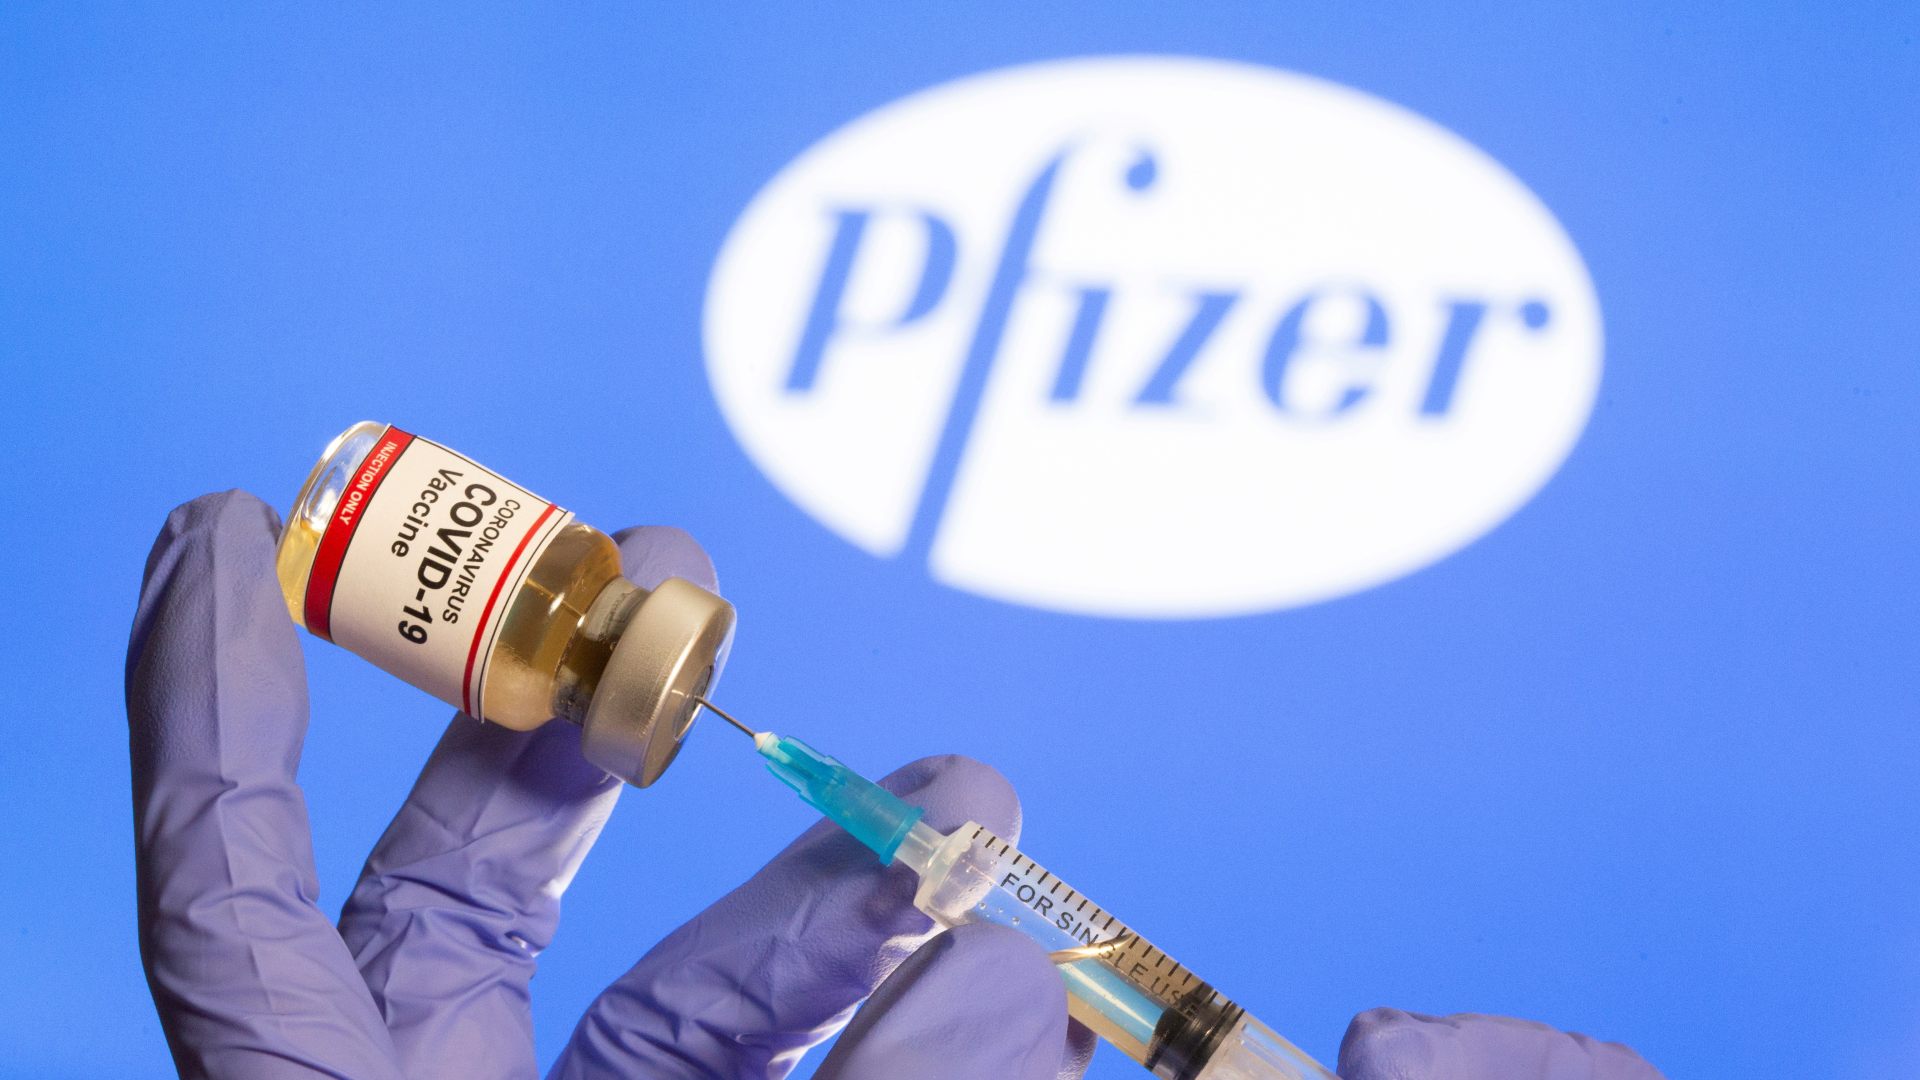 La vacuna de Pfizer promete, pero faltan datos y su distribución será un desafío